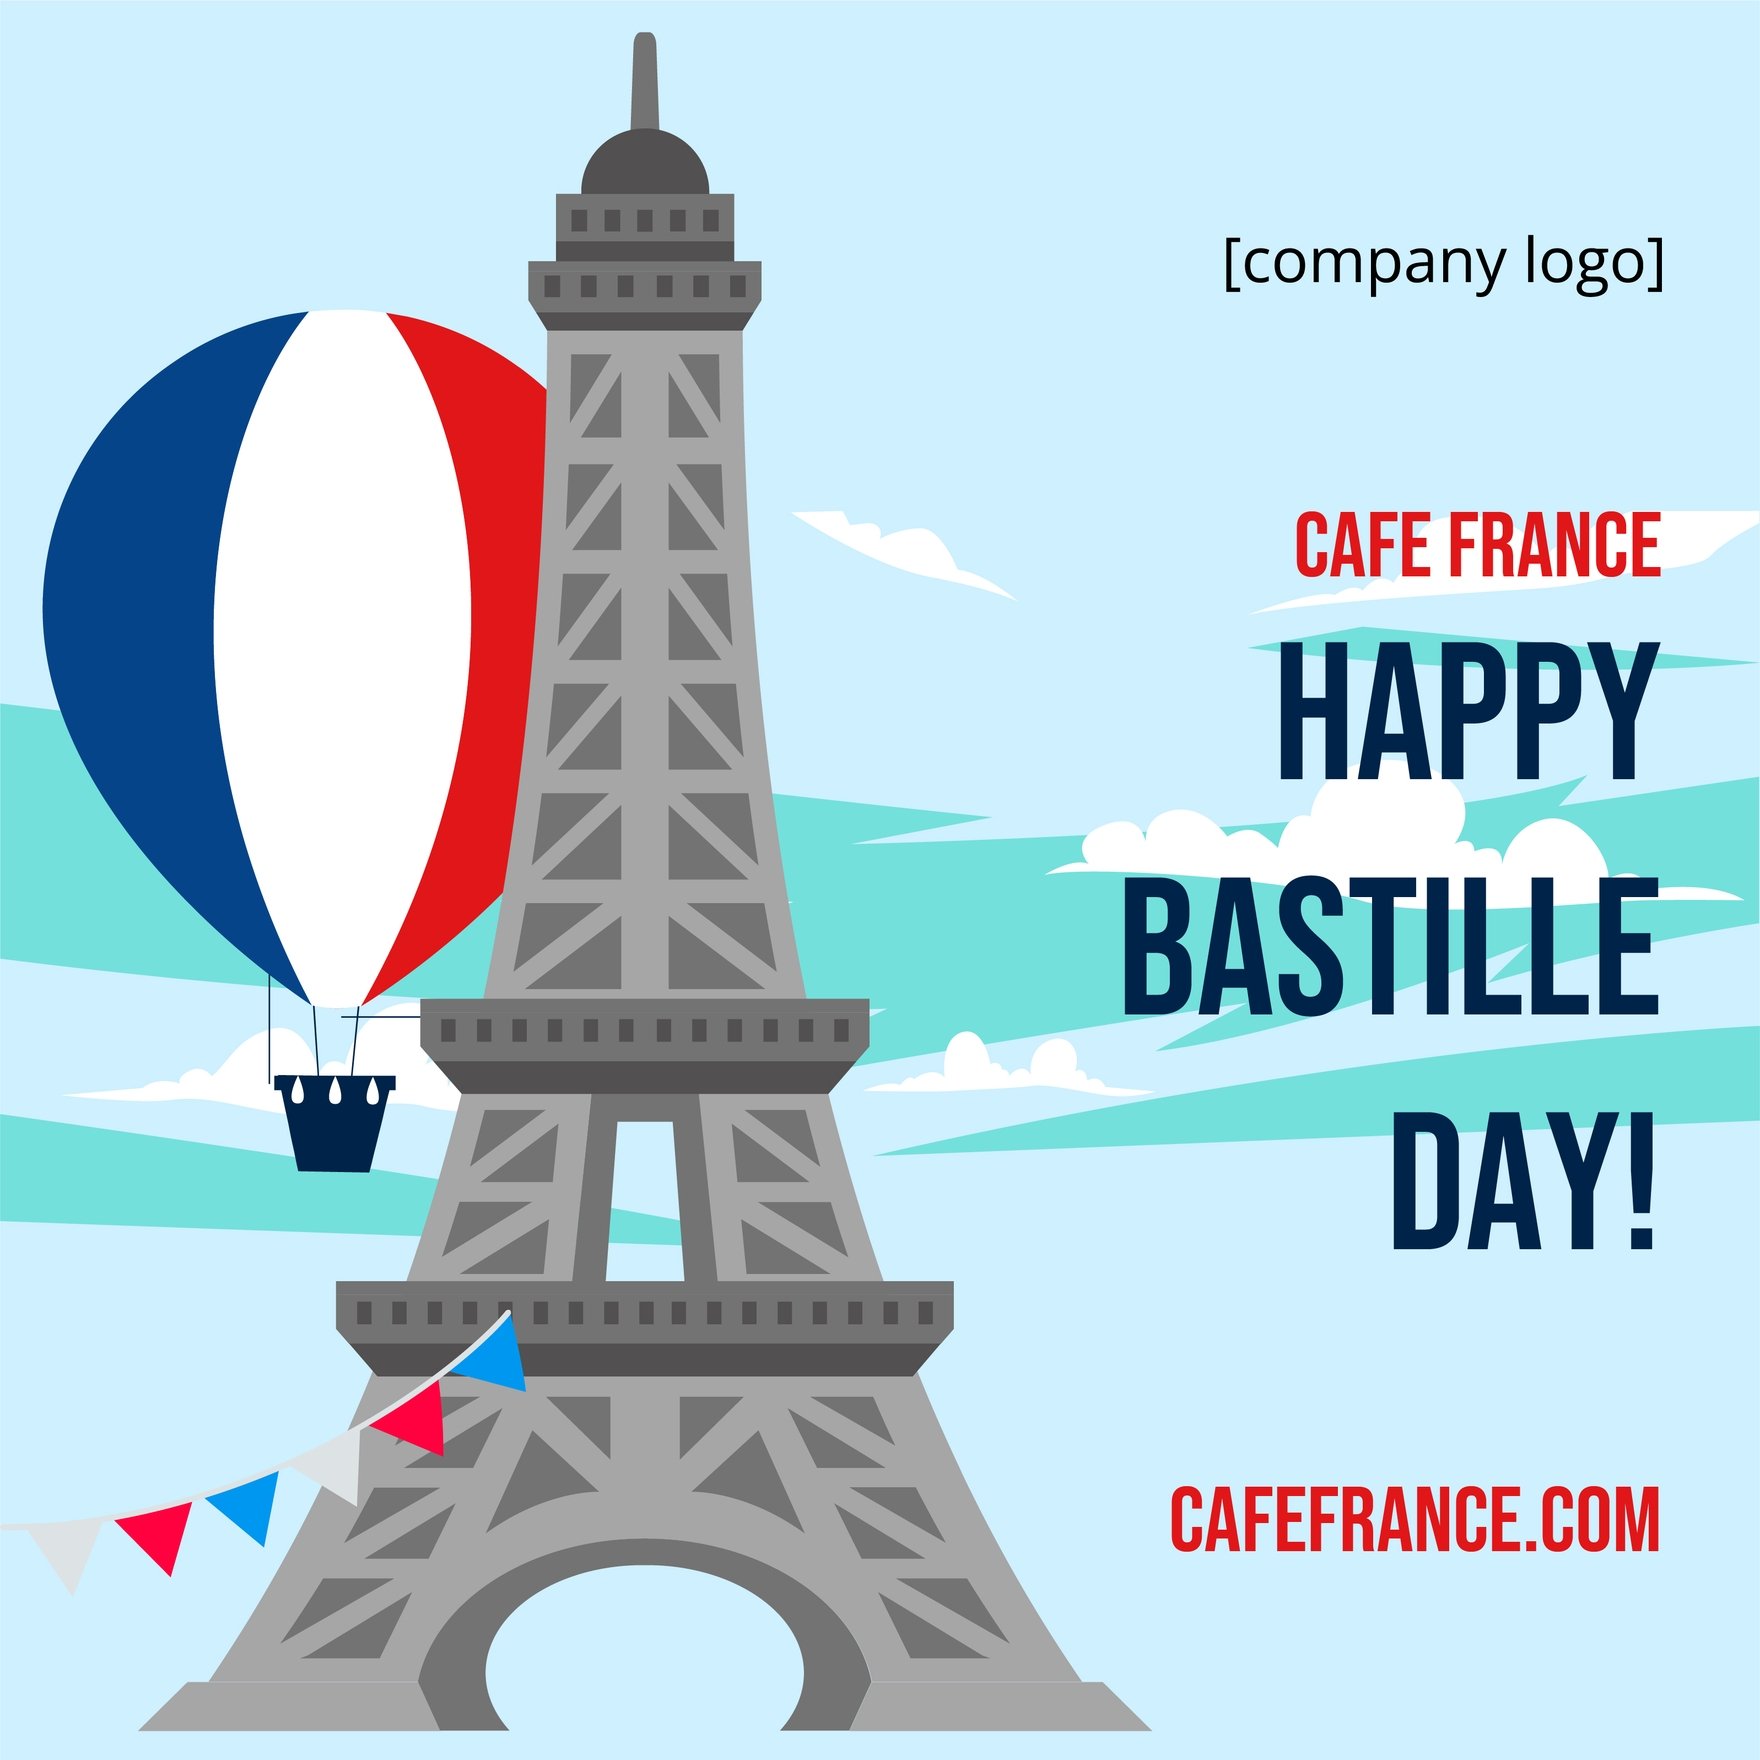 Free Bastille Day Flyer Vector in Illustrator, PSD, EPS, SVG, JPG, PNG